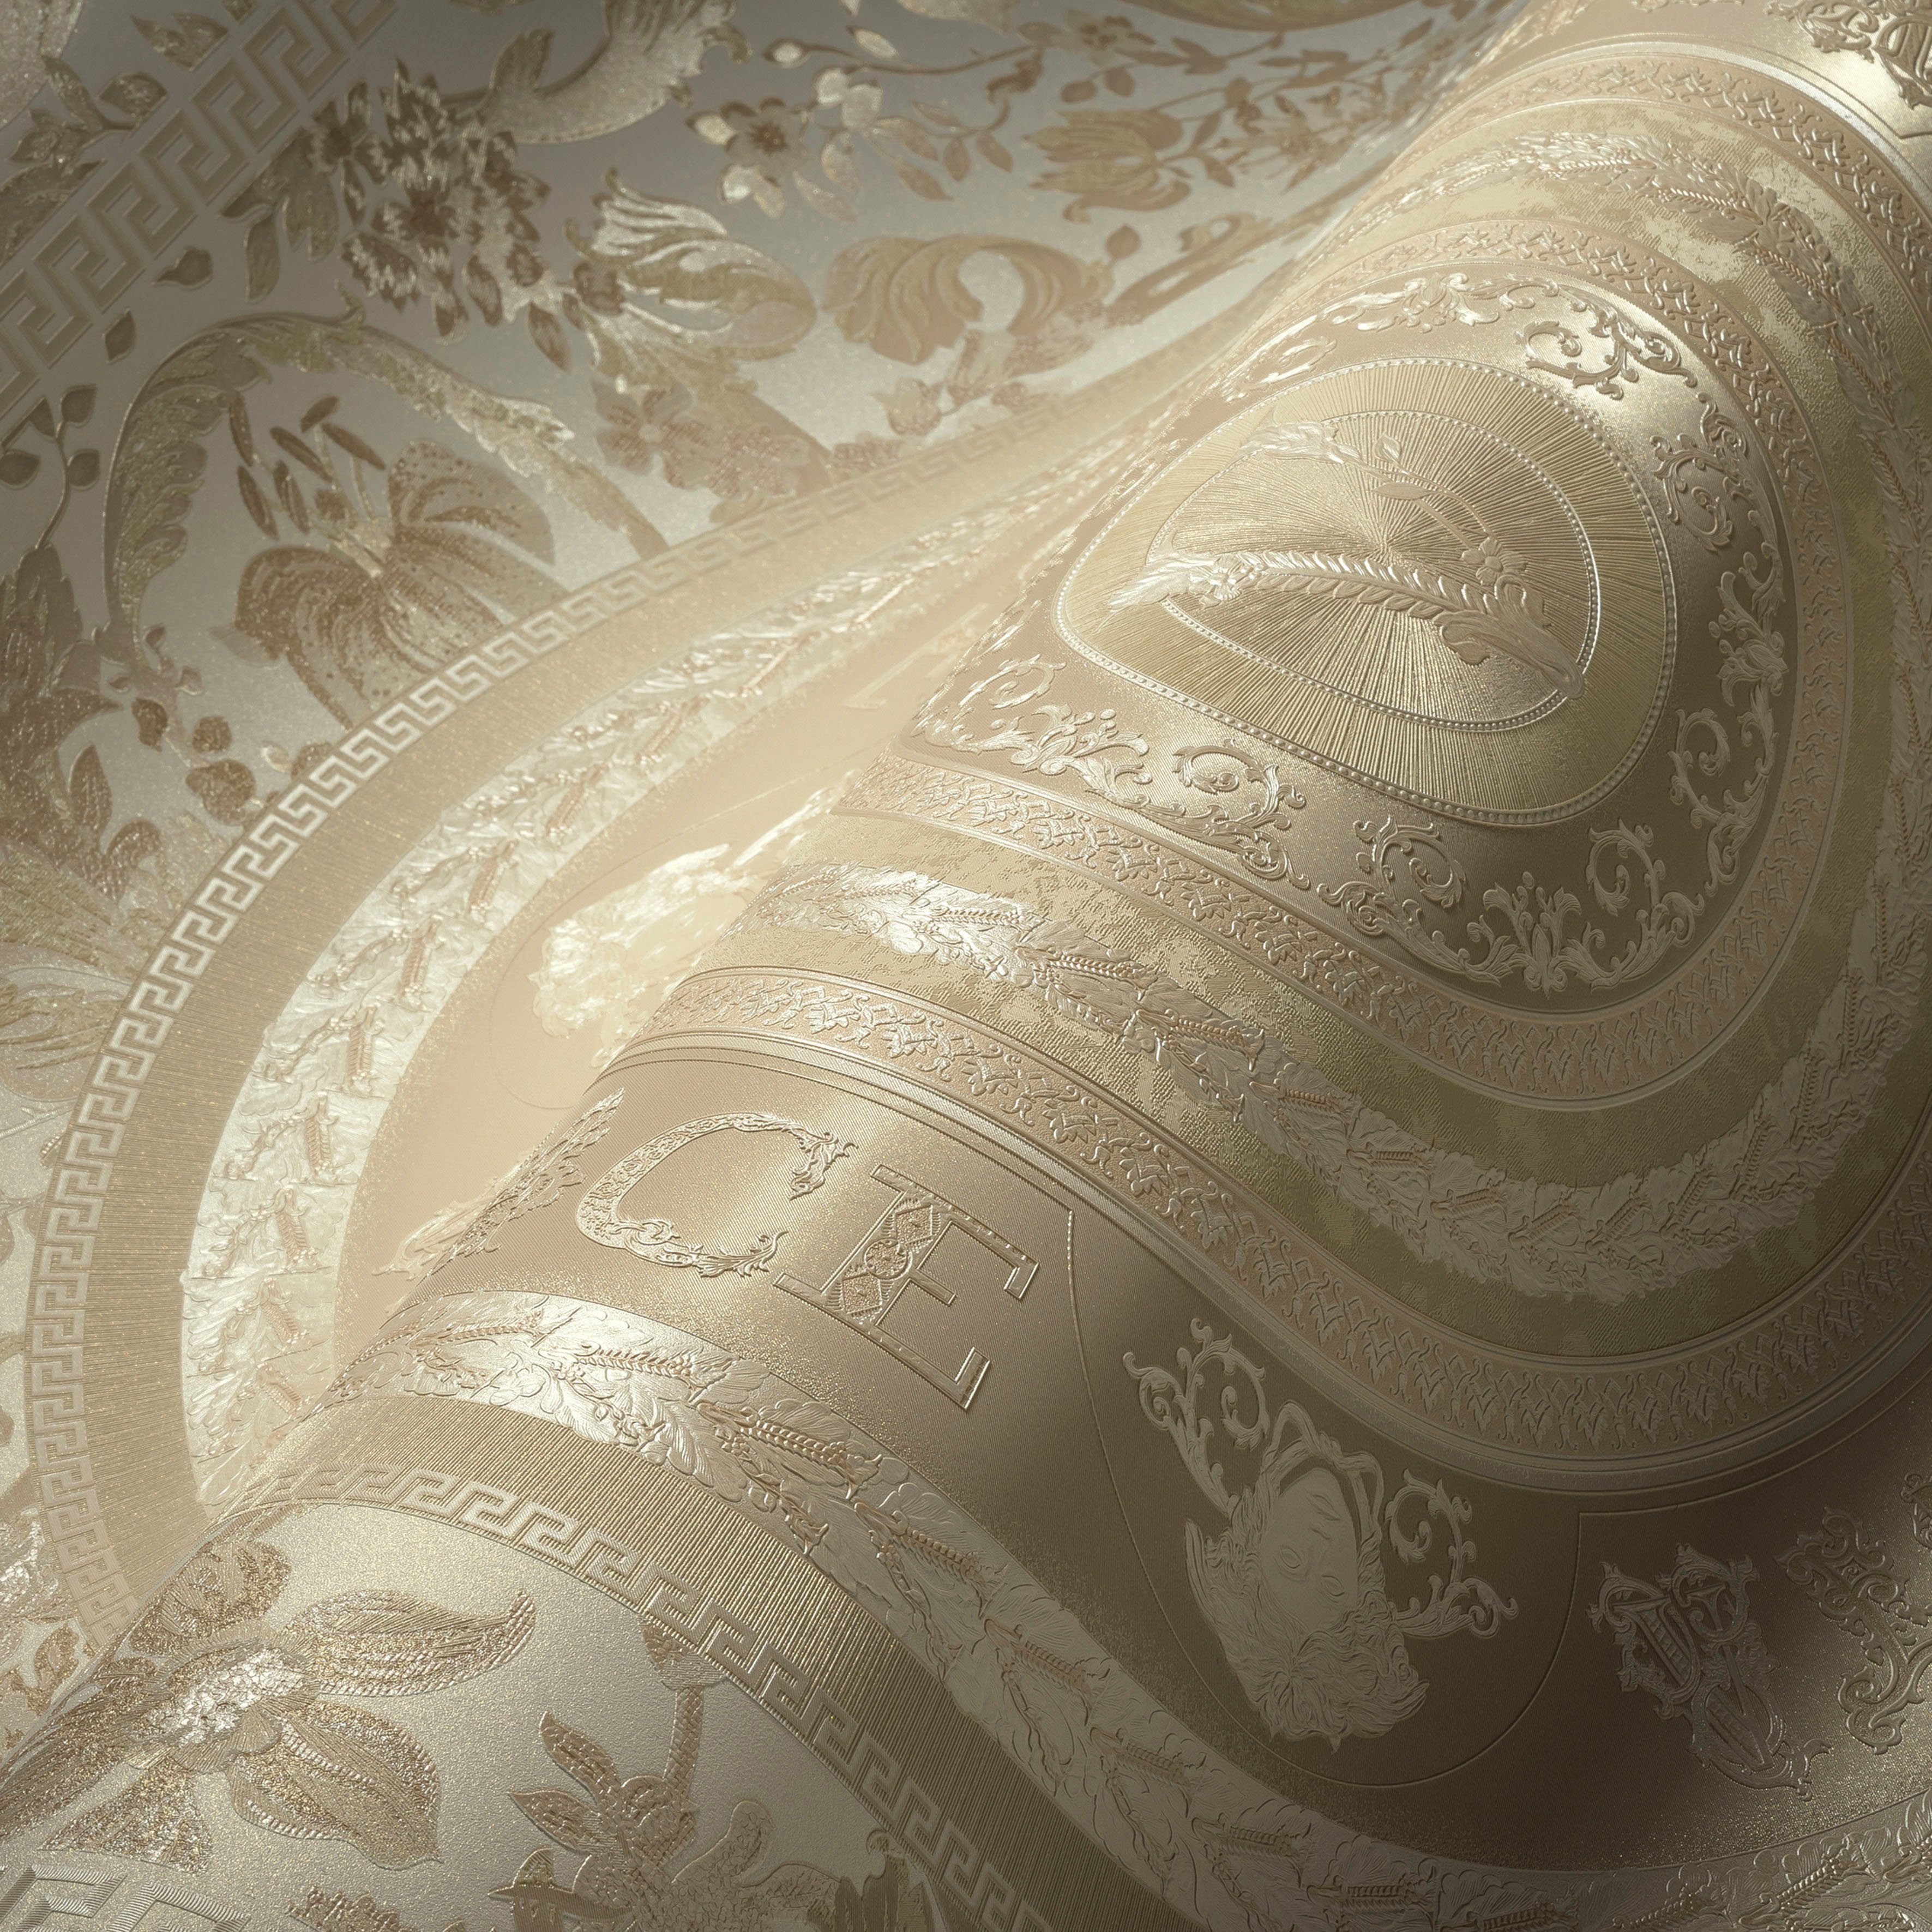 Wallpaper Design, Versace Vliestapete Floral Fliesen-Tapete strukturiert, Versace glänzend, beige/creme/weiß St), Designertapete, 5 leicht (1 auffallende leicht